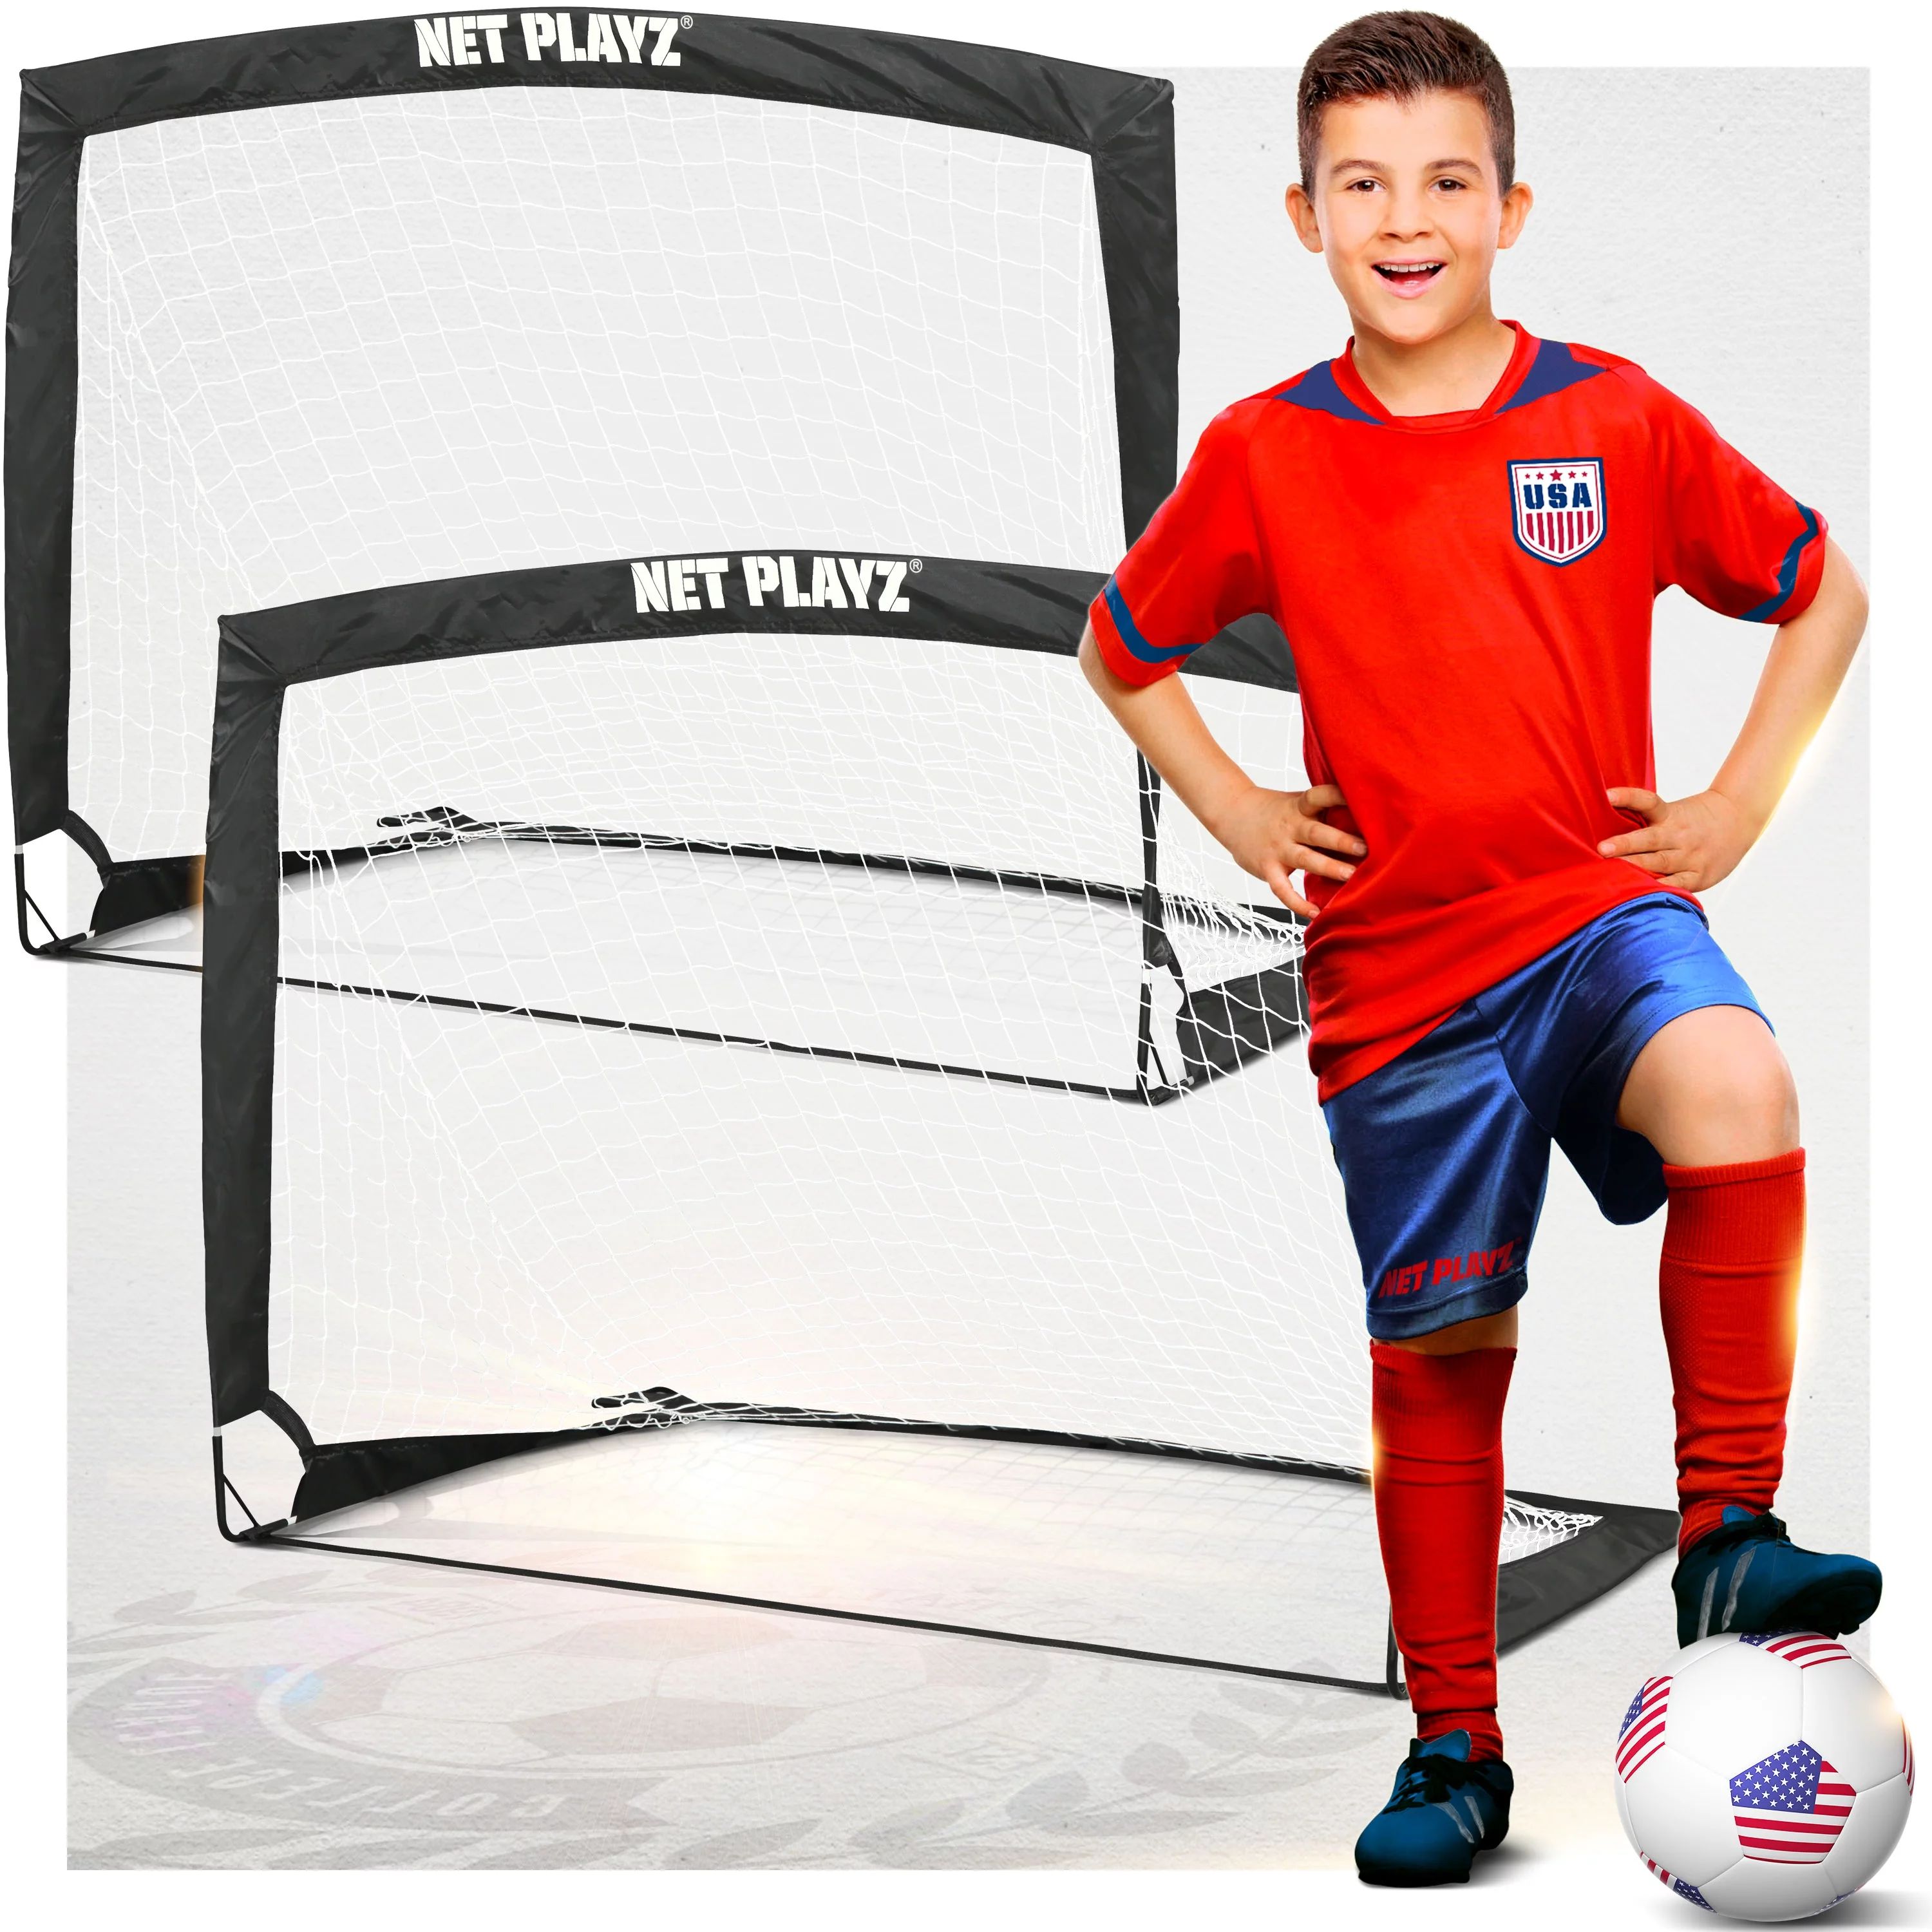 Soccer Goals Soccer Net - Kids Pop-up Football Goals for Backyard Practice & Training, Portable S... | Walmart (US)